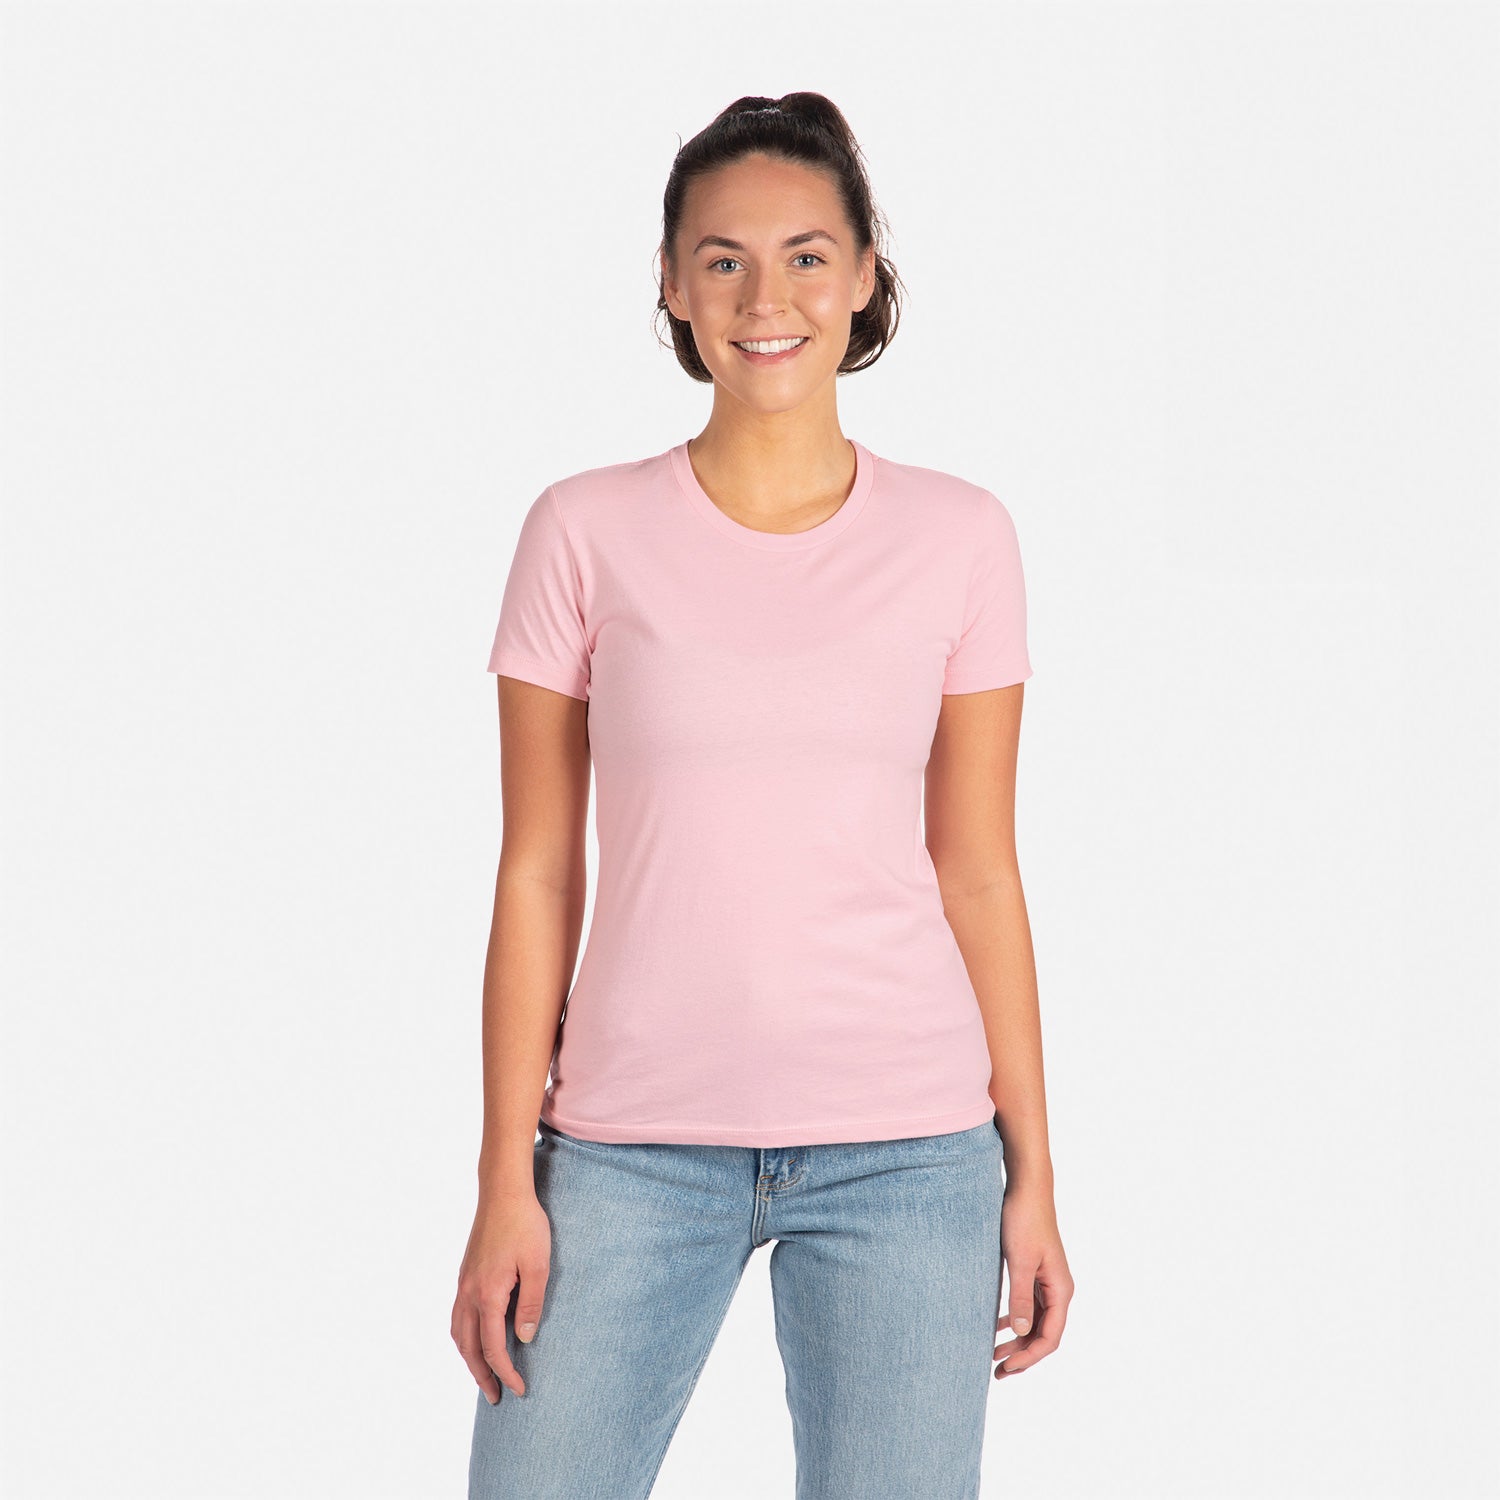 Cotton Boyfriend T-Shirt Light Pink 3900 Next Level Apparel